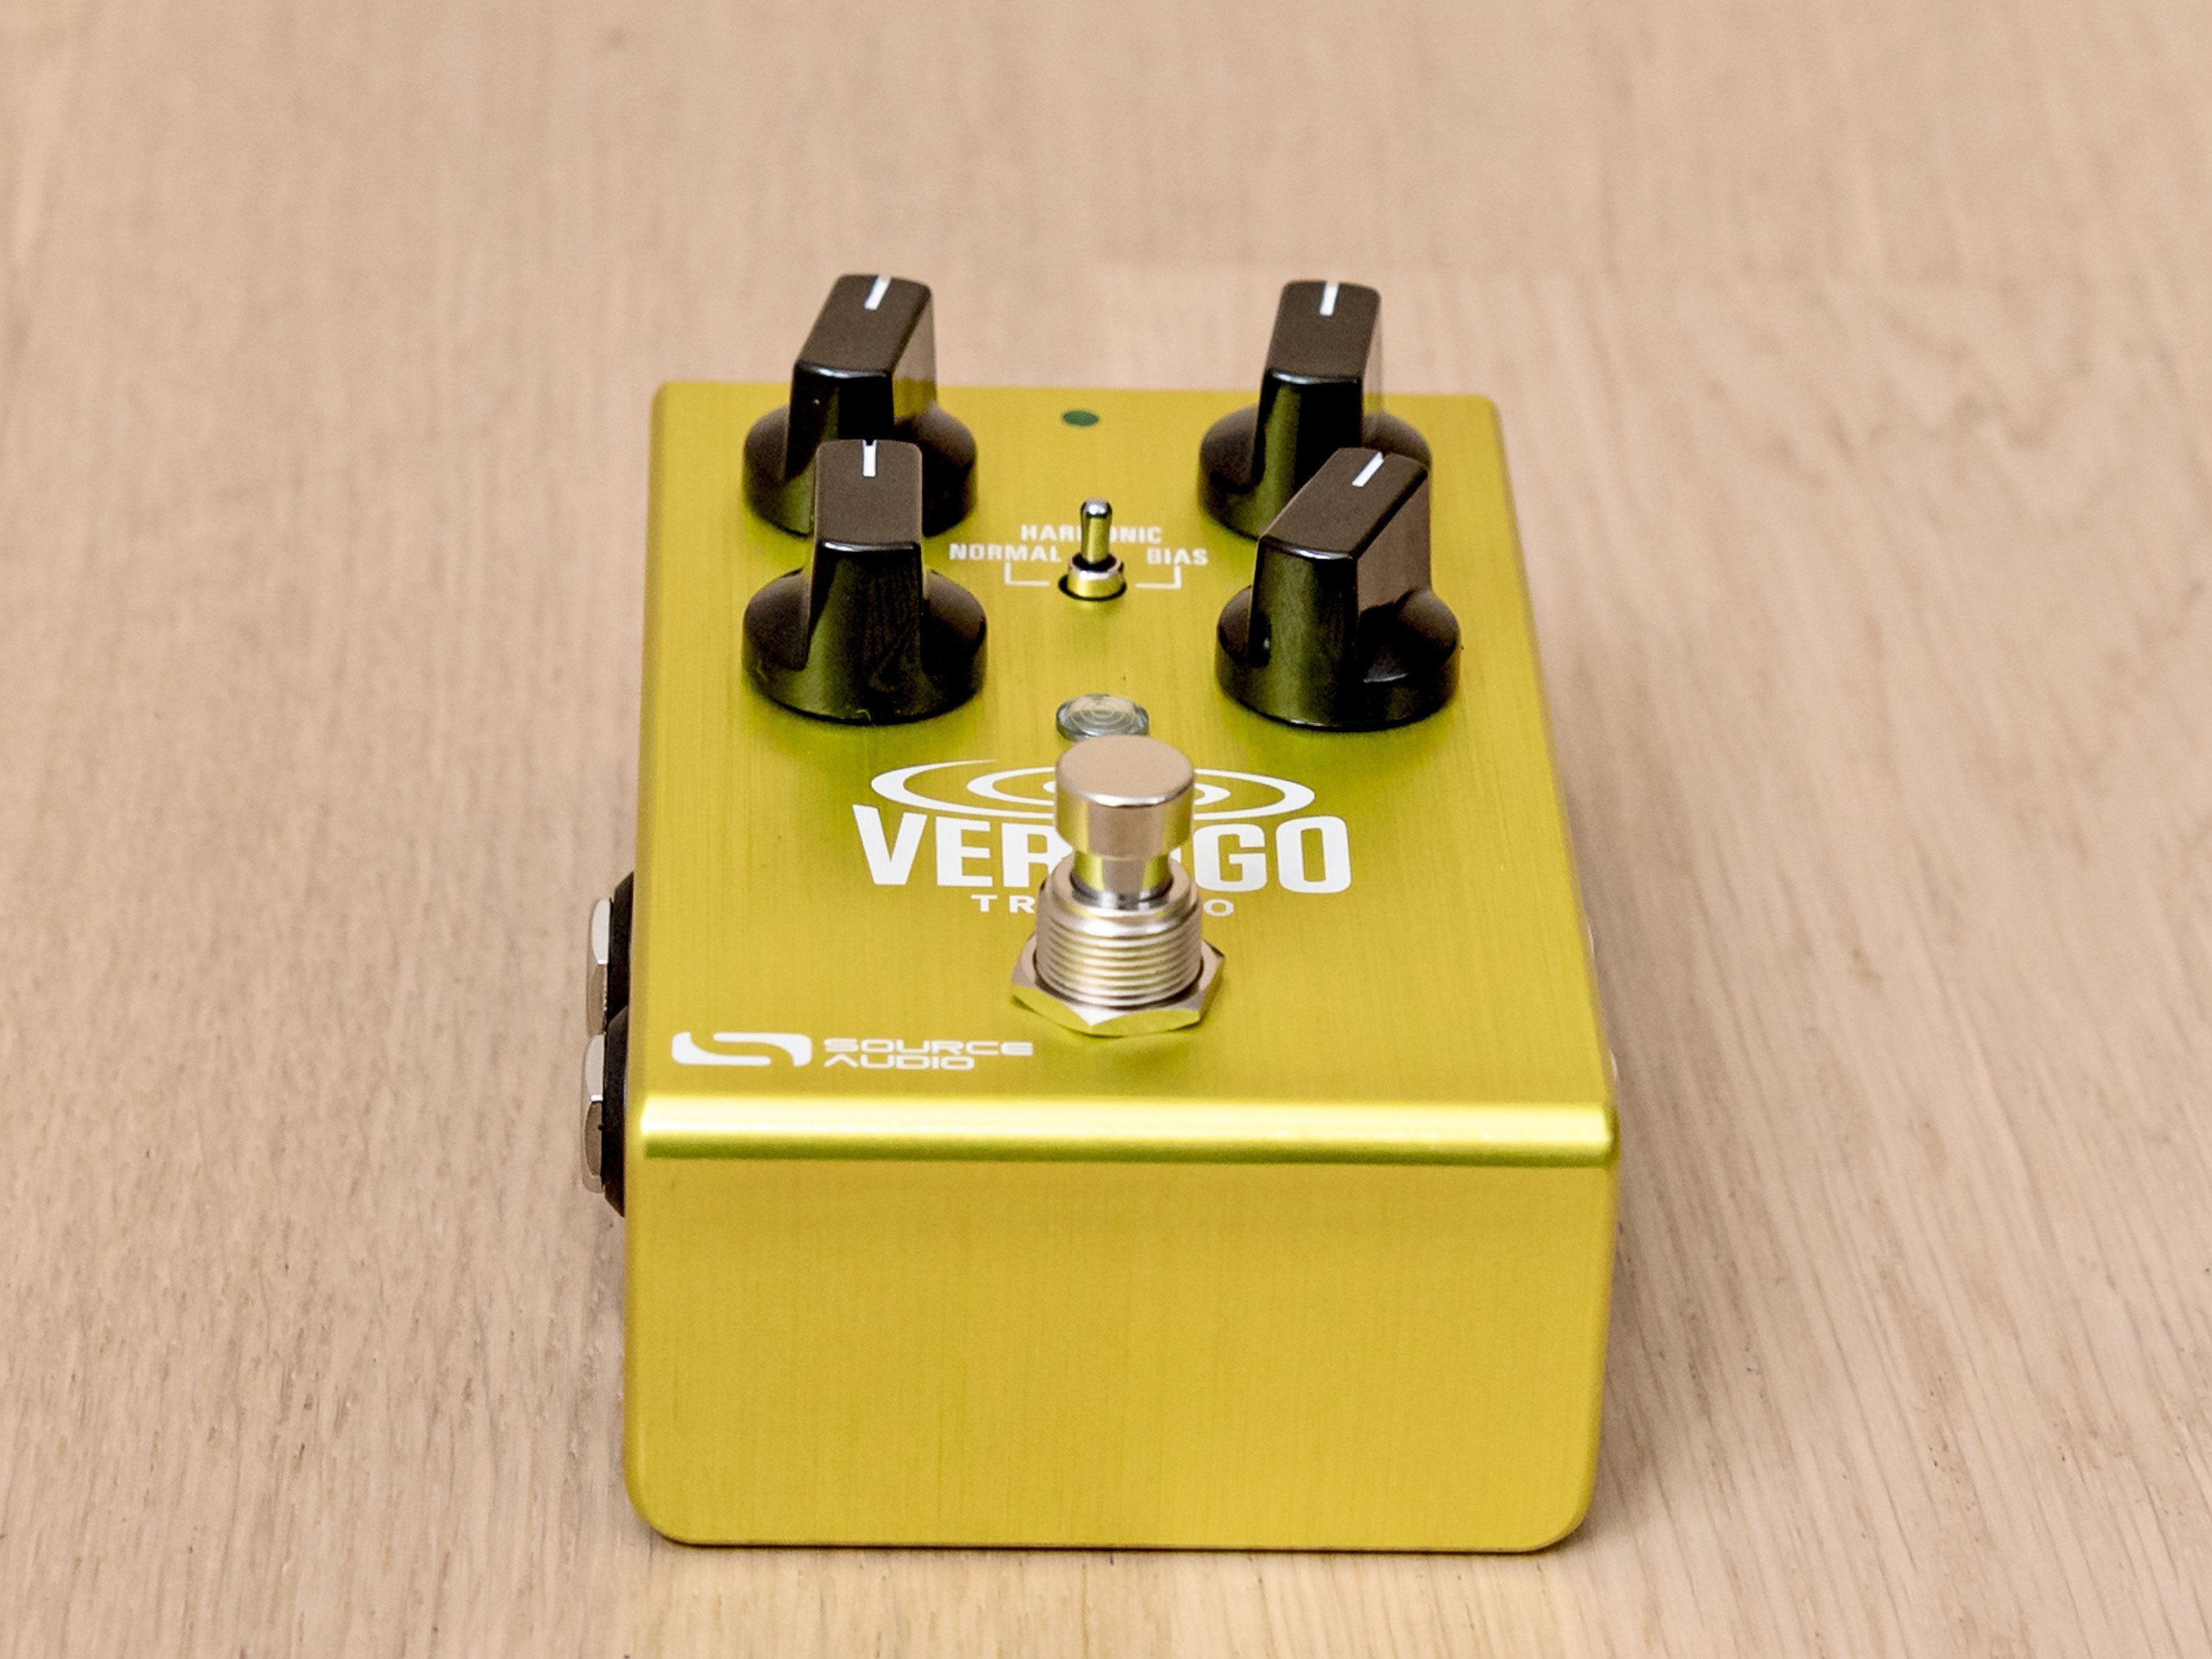 Source Audio Vertigo Tremolo Guitar Effects Pedal w/ Box, Power Supply